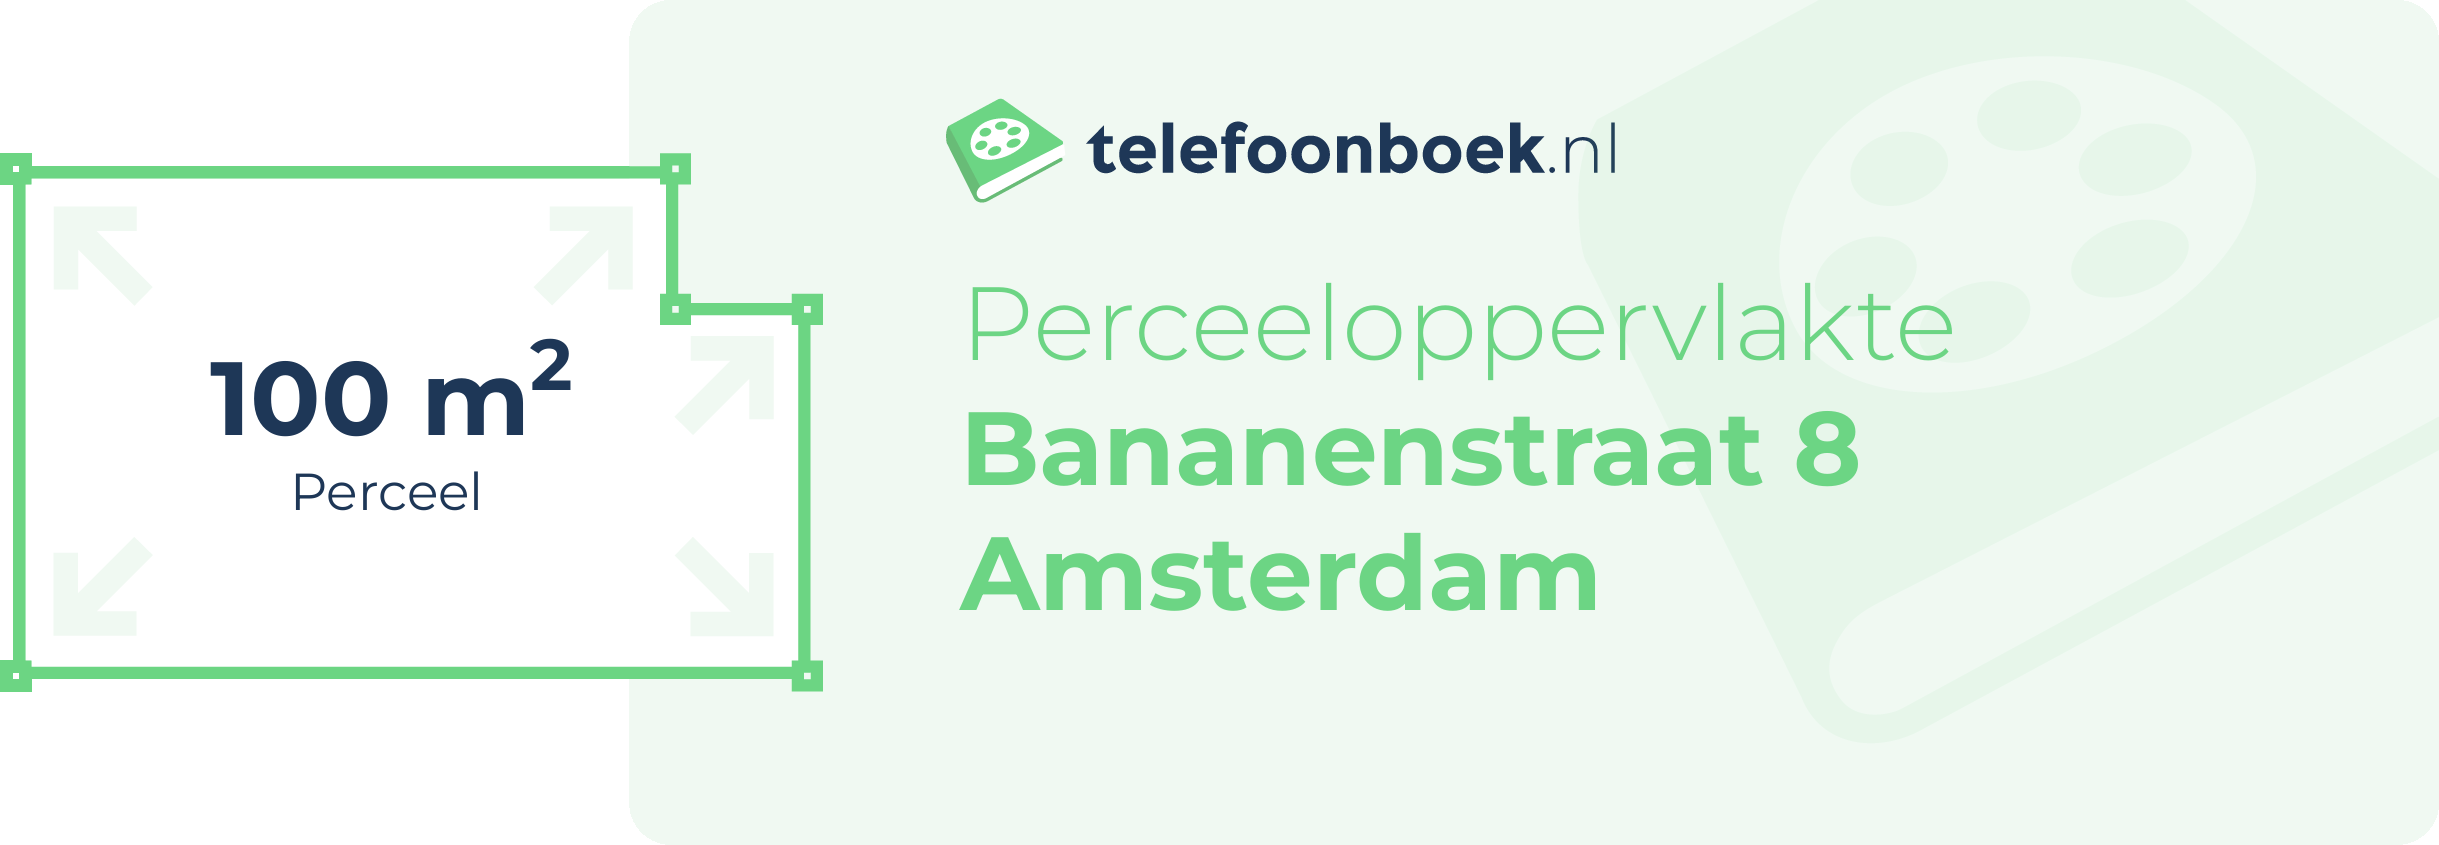 Perceeloppervlakte Bananenstraat 8 Amsterdam